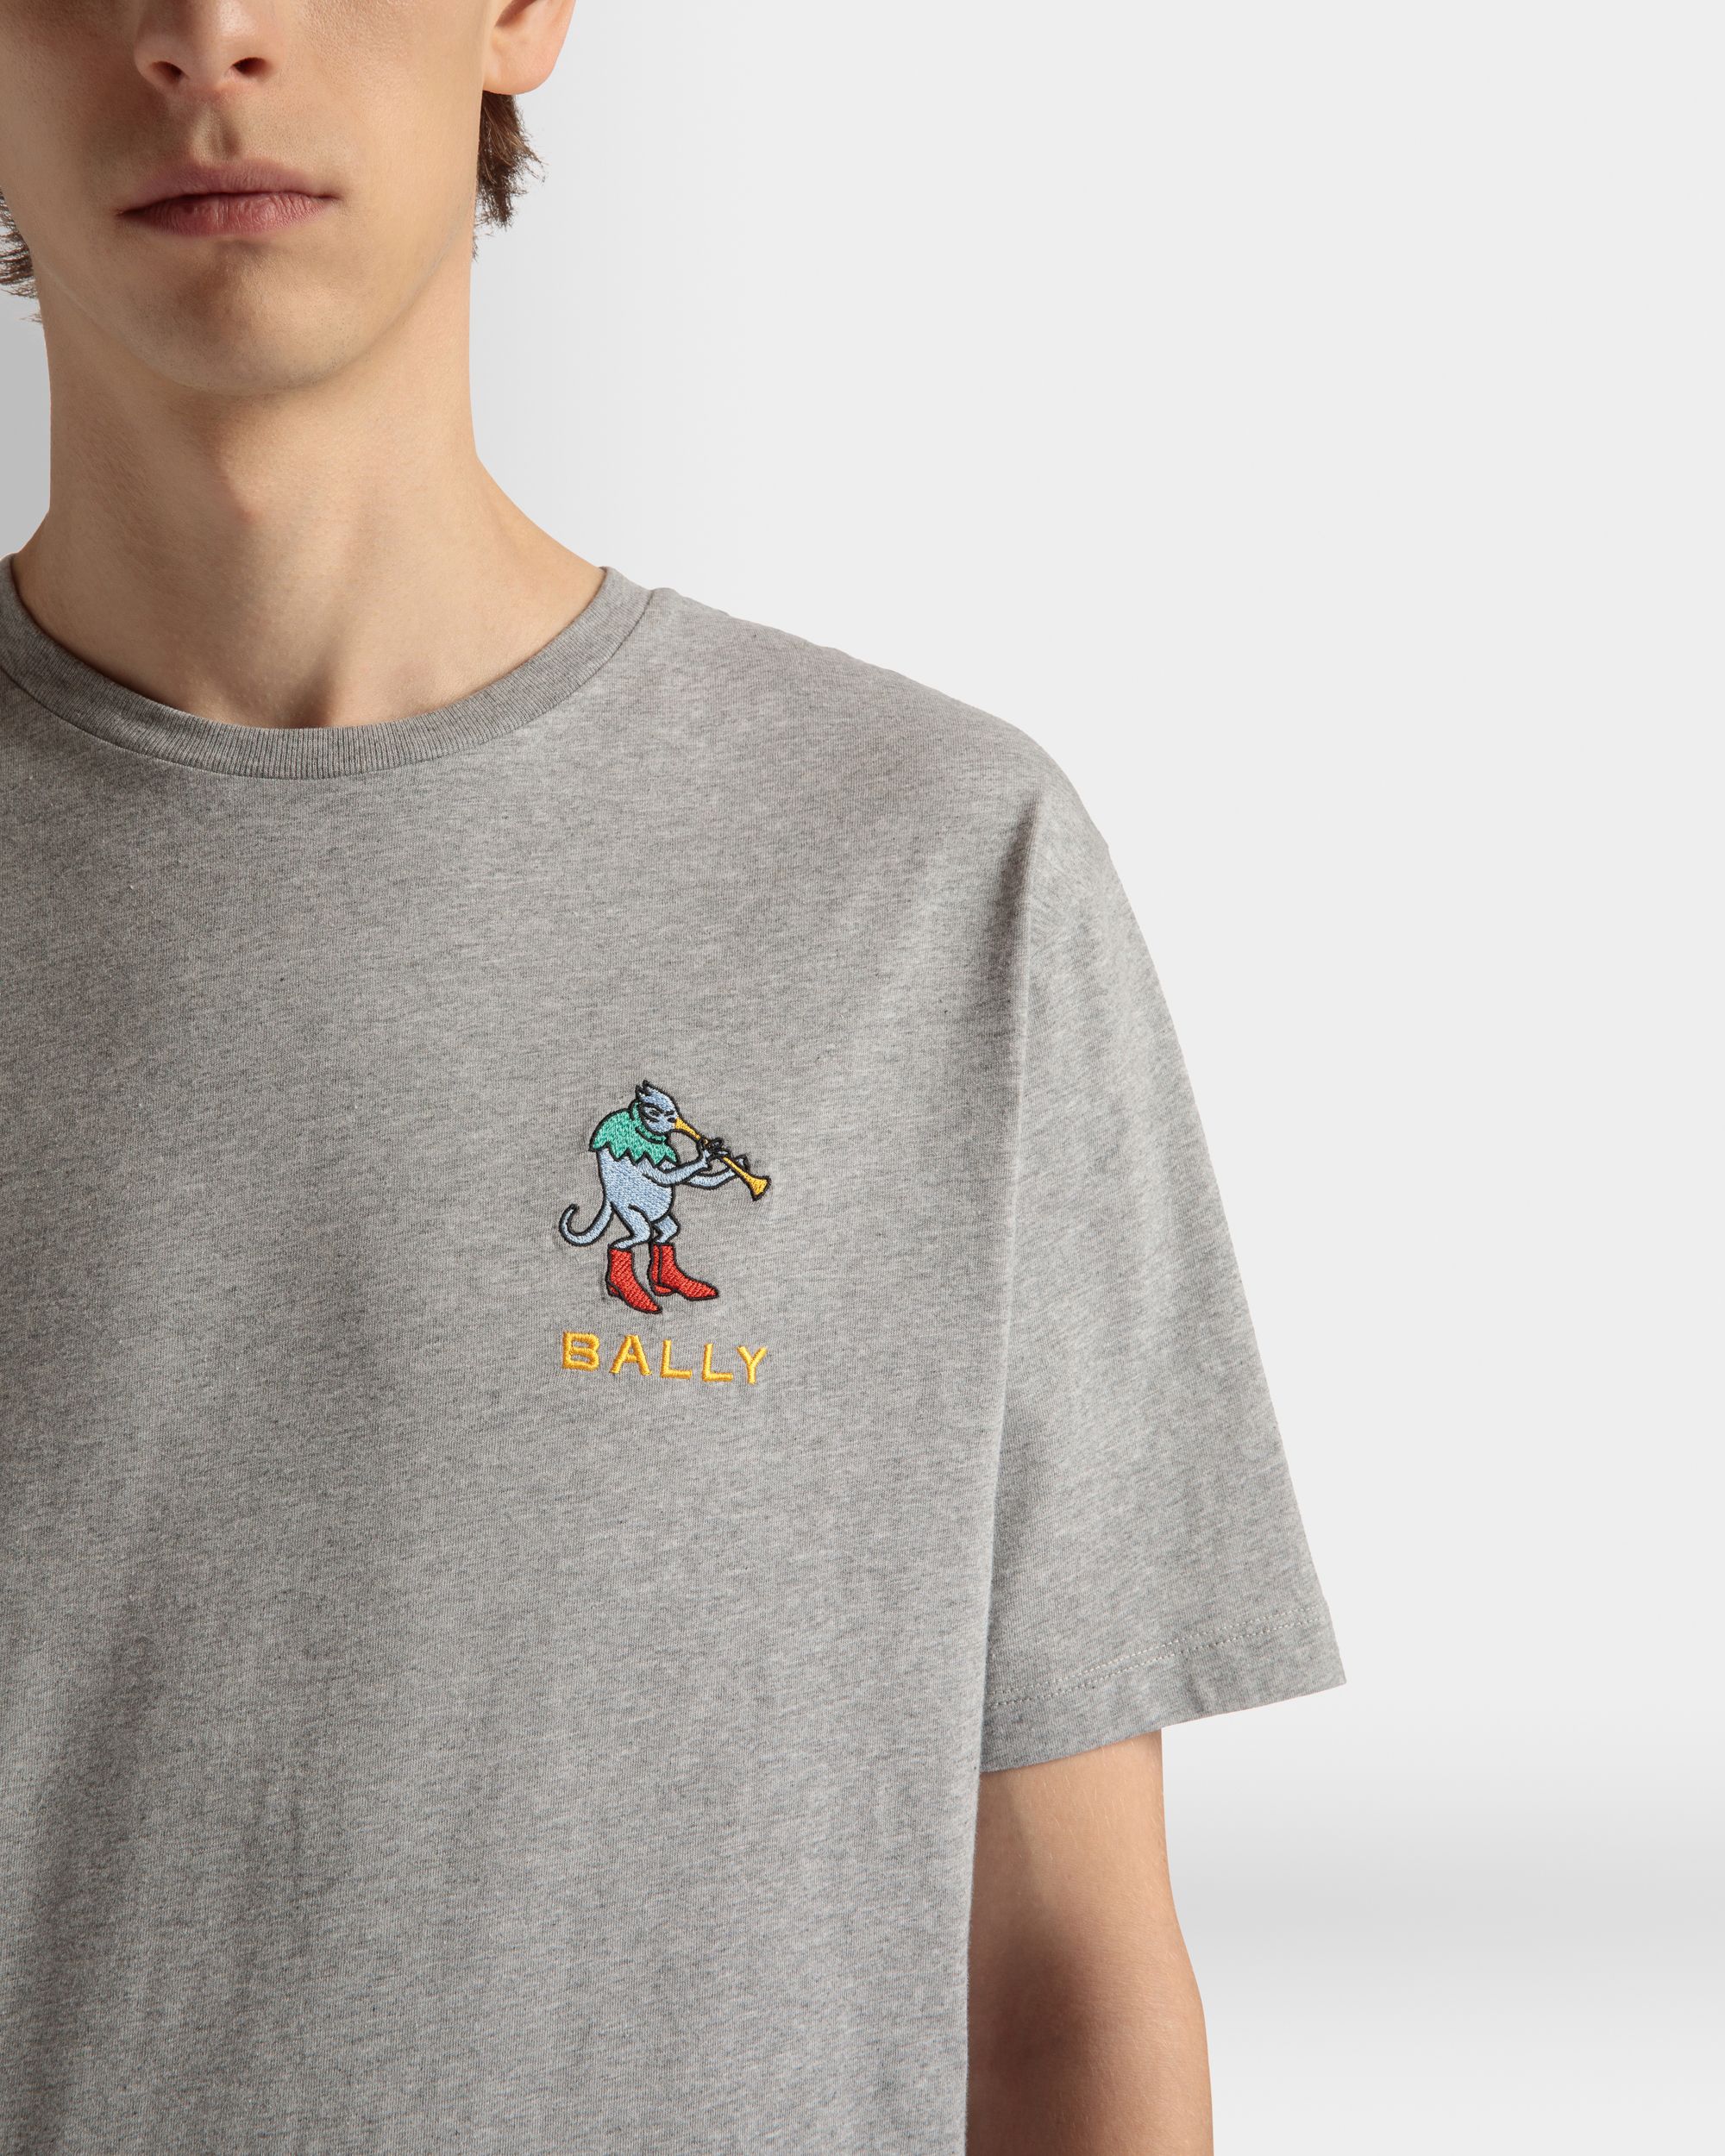 T-Shirt für Herren aus grau melierter Baumwolle | Bally | Model getragen Detail